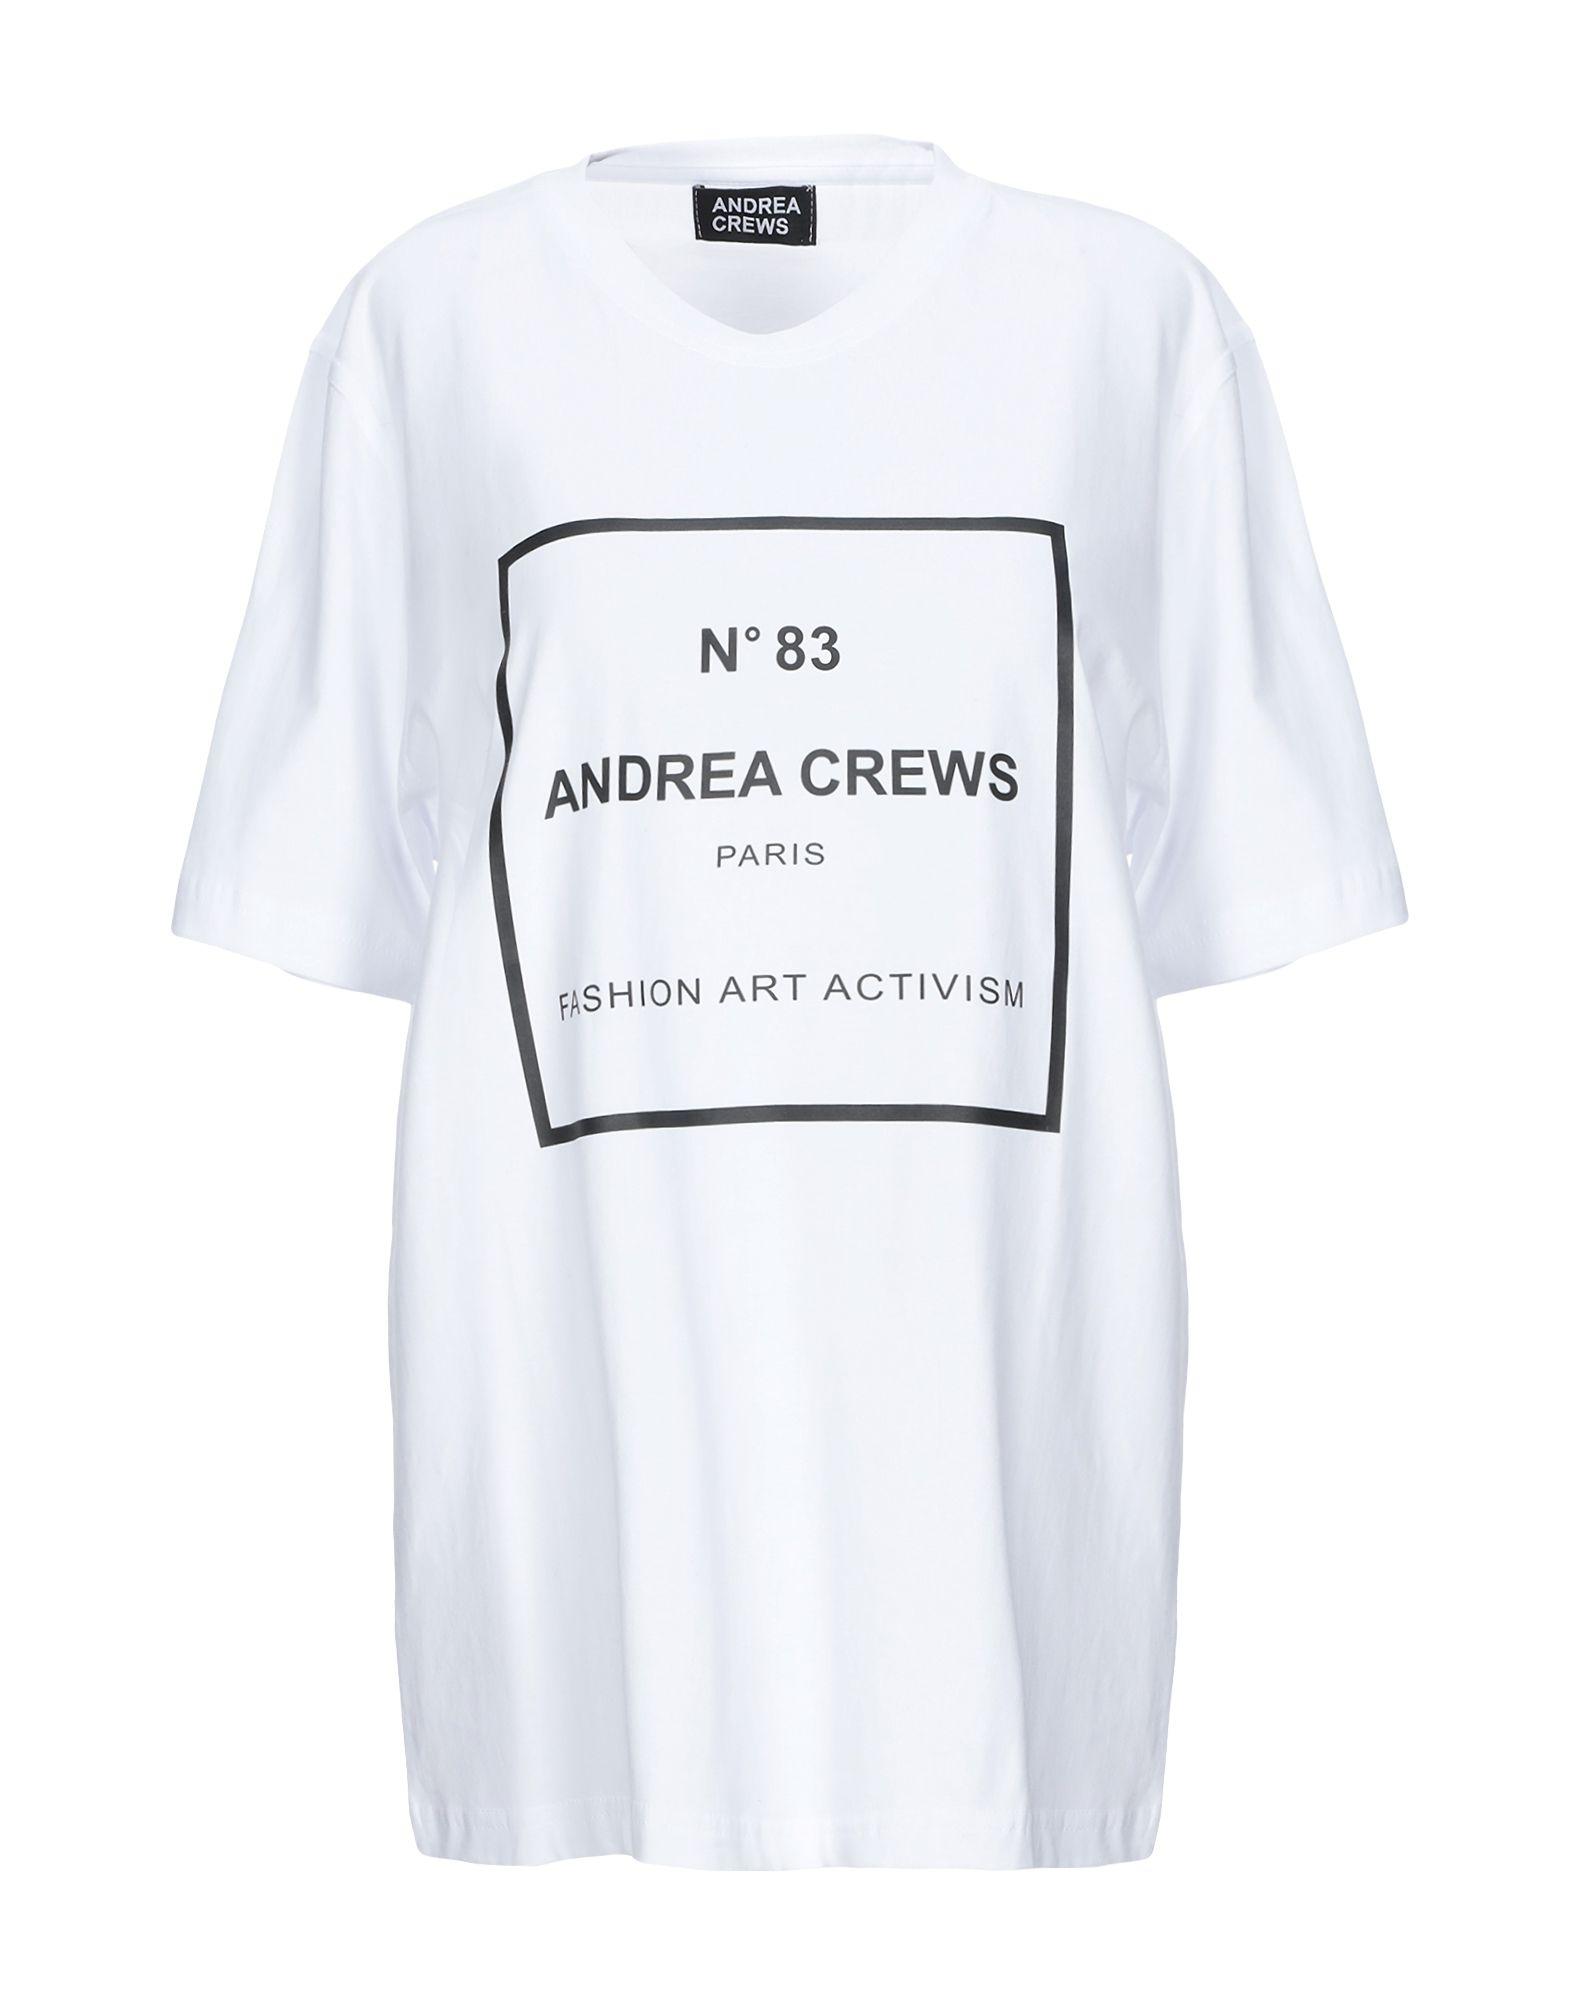   ANDREA CREWS